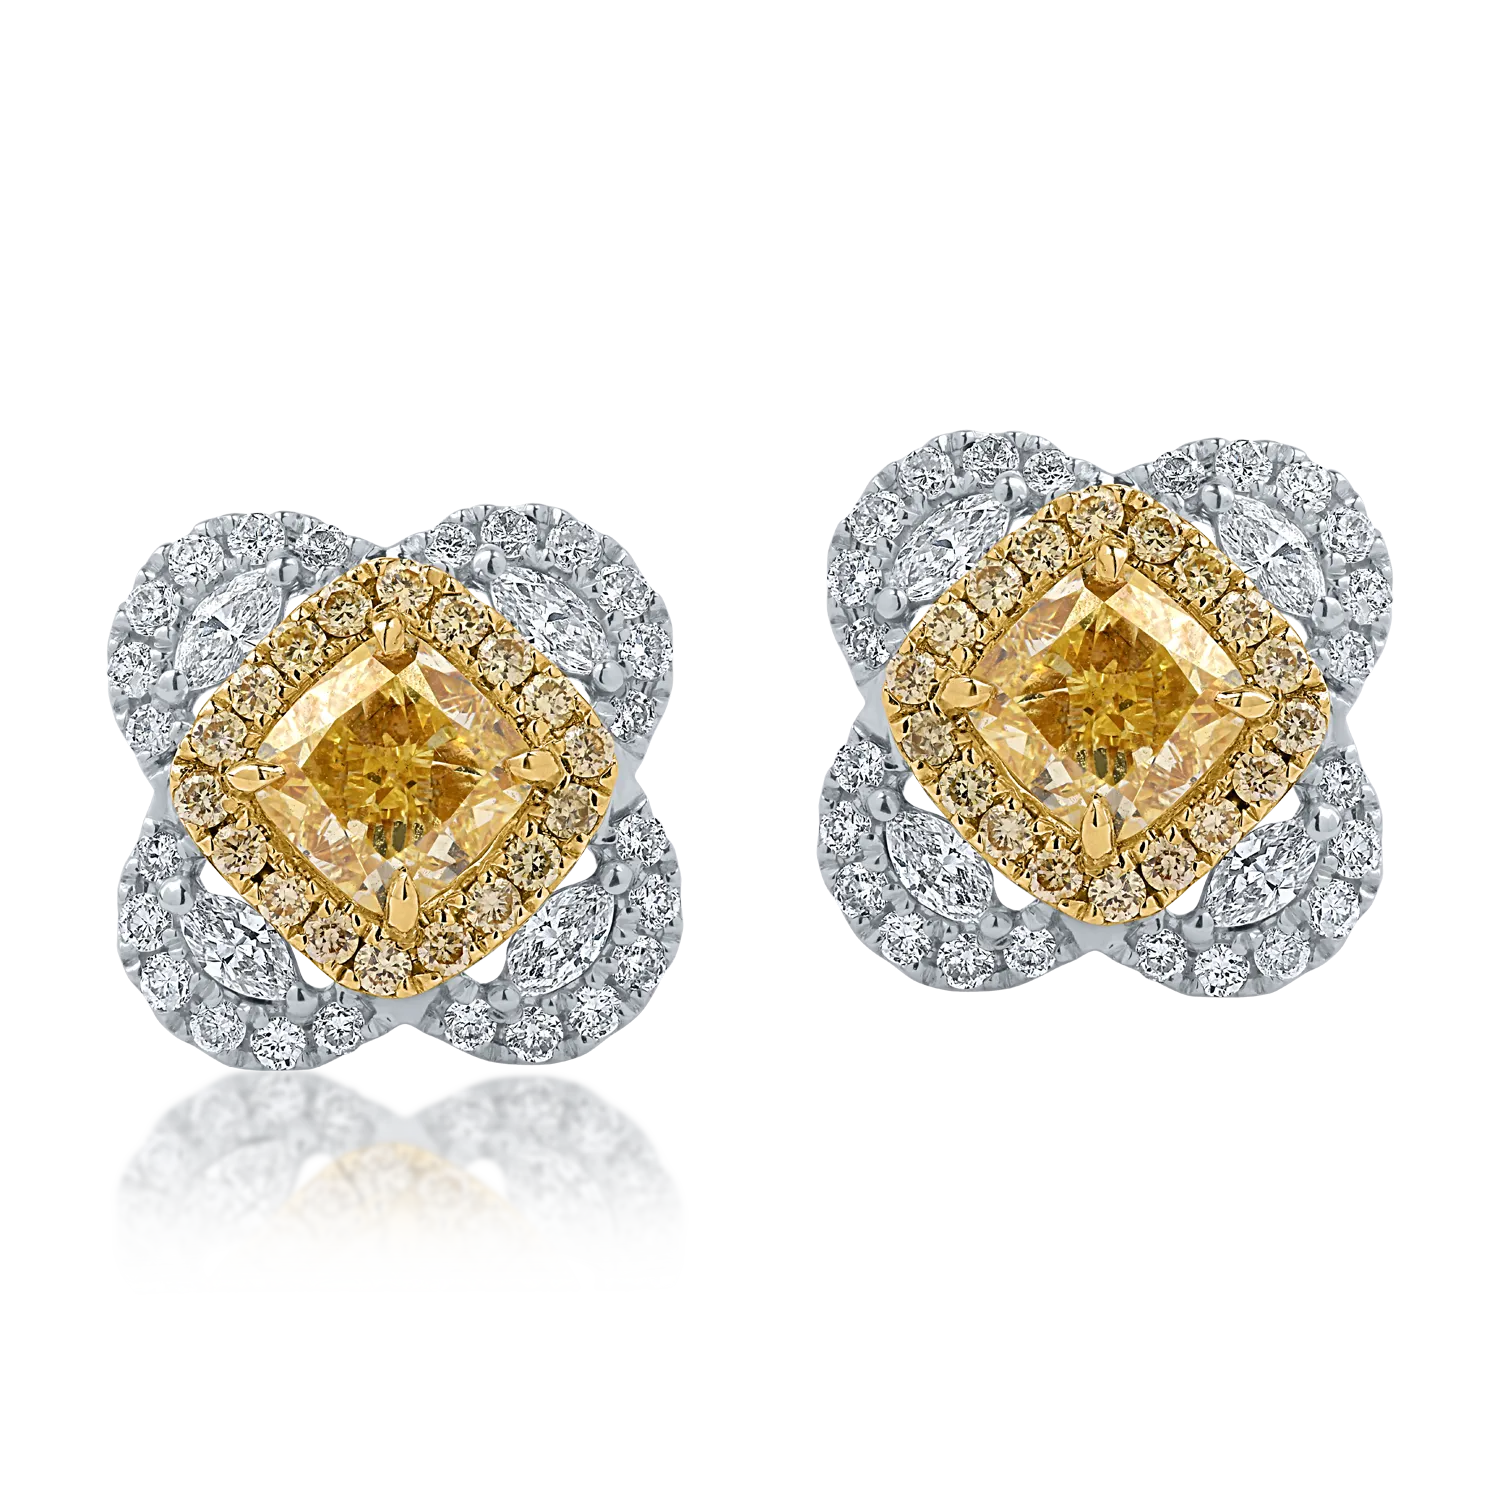 Sárga-fehér arany fülbevaló 1.9ct gyémántokkal